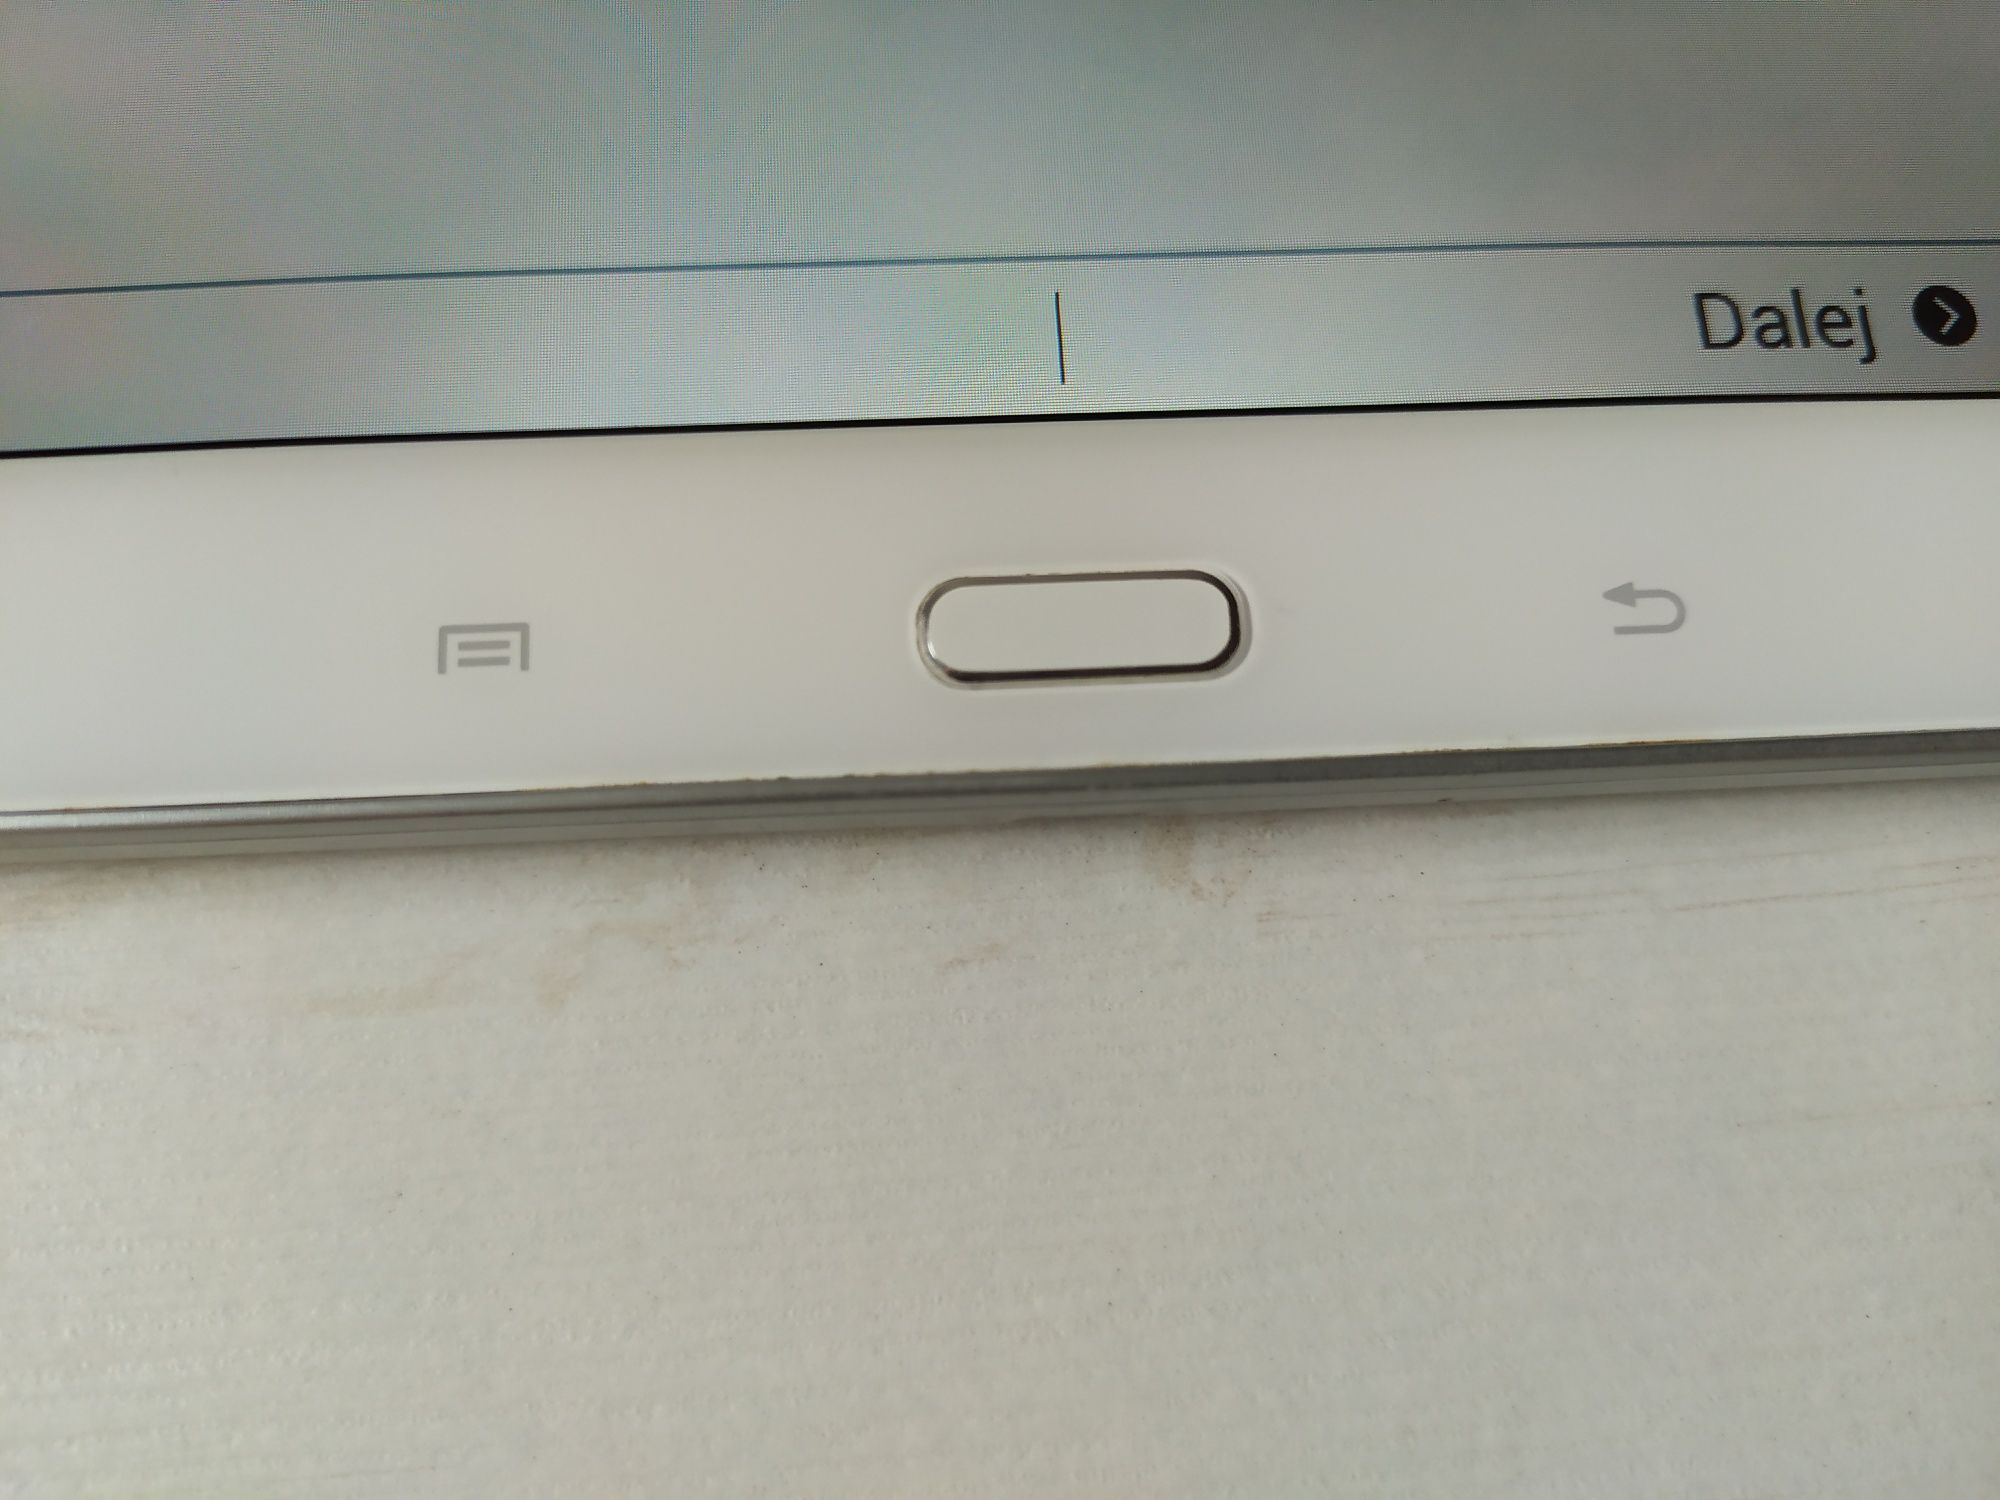 Tablet Galaxy TAB 3 - biały na części